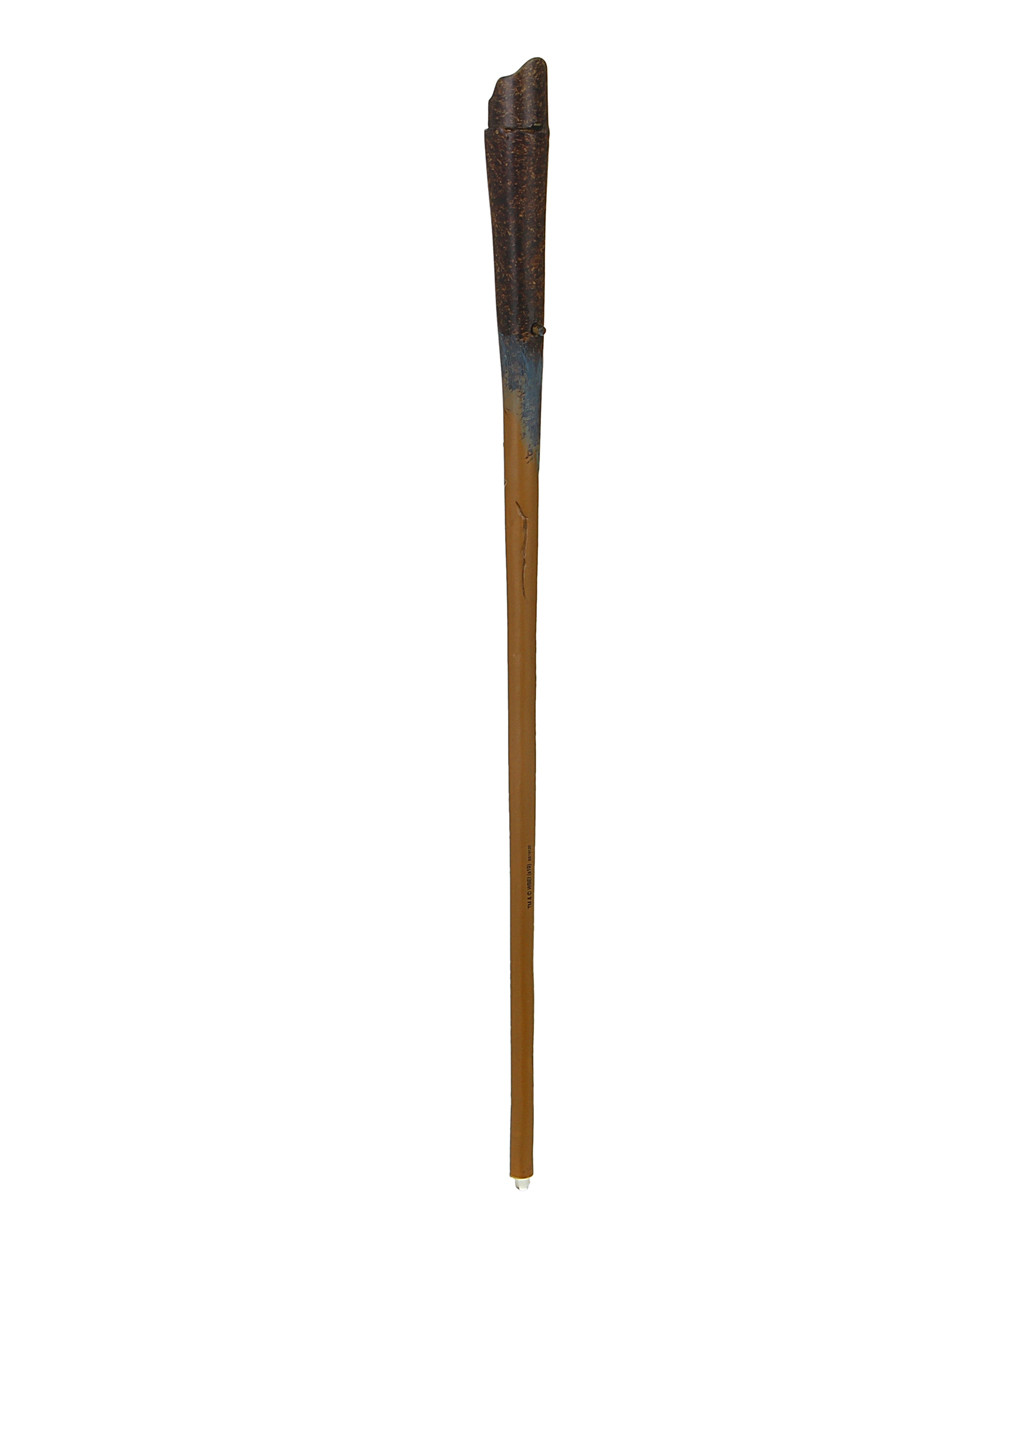 Волшебная палочка Ньюта Скамандера, 4х39х9 см Wizarding World (286302947)